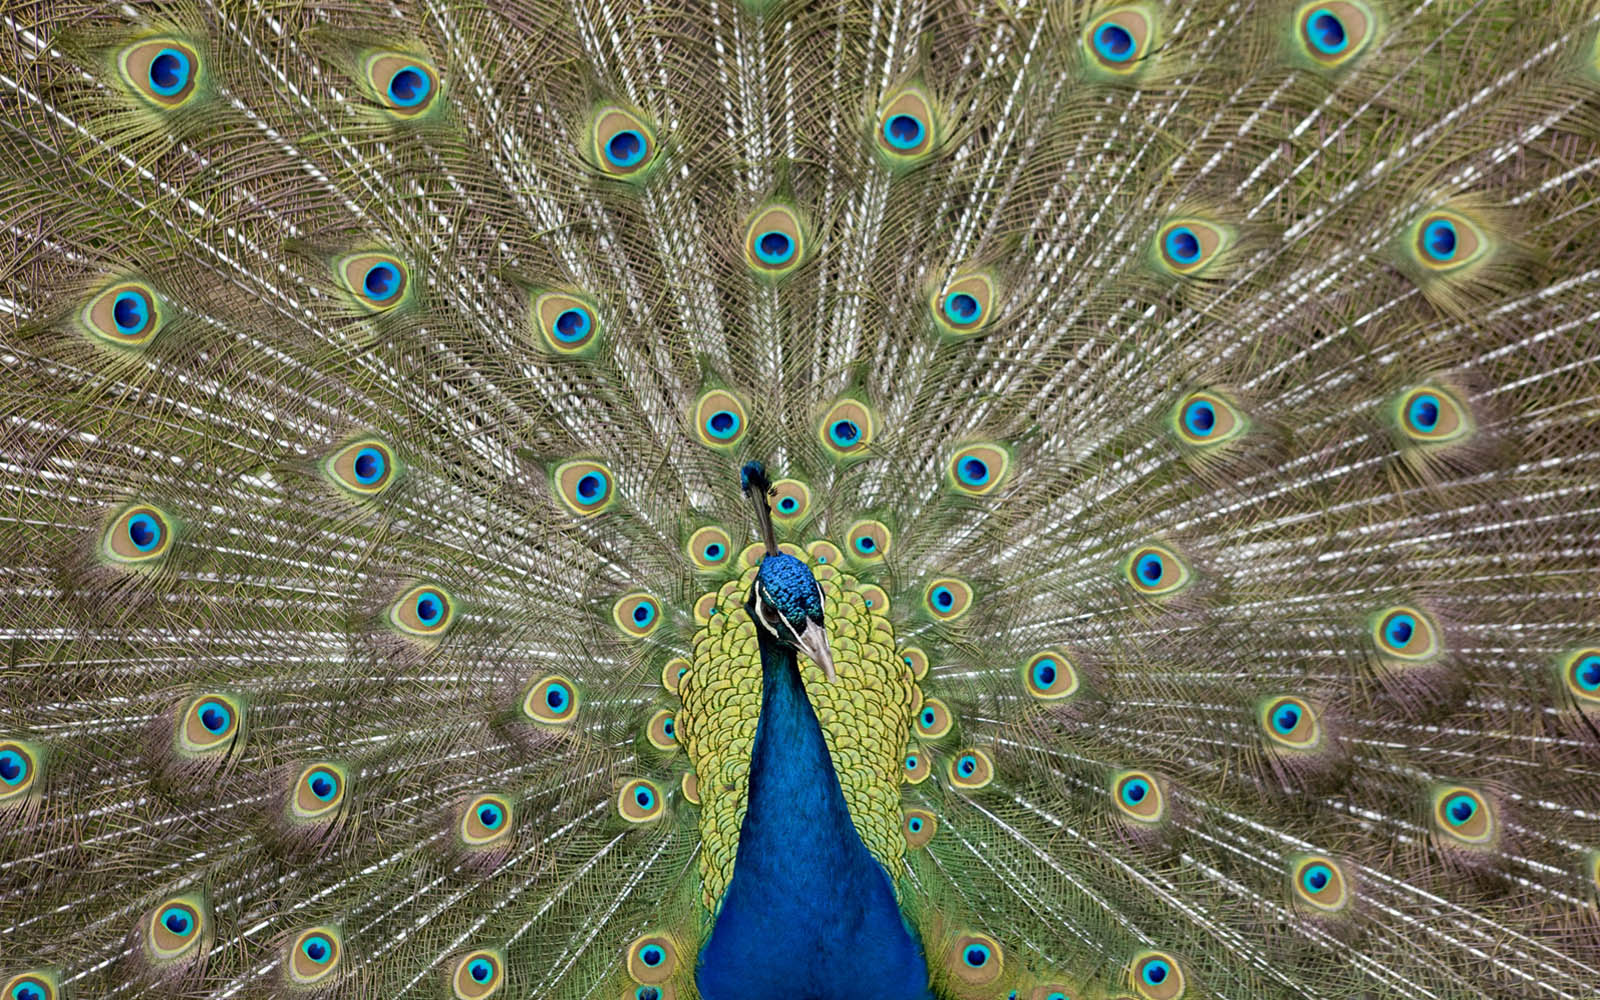 Wallpaper Peacock